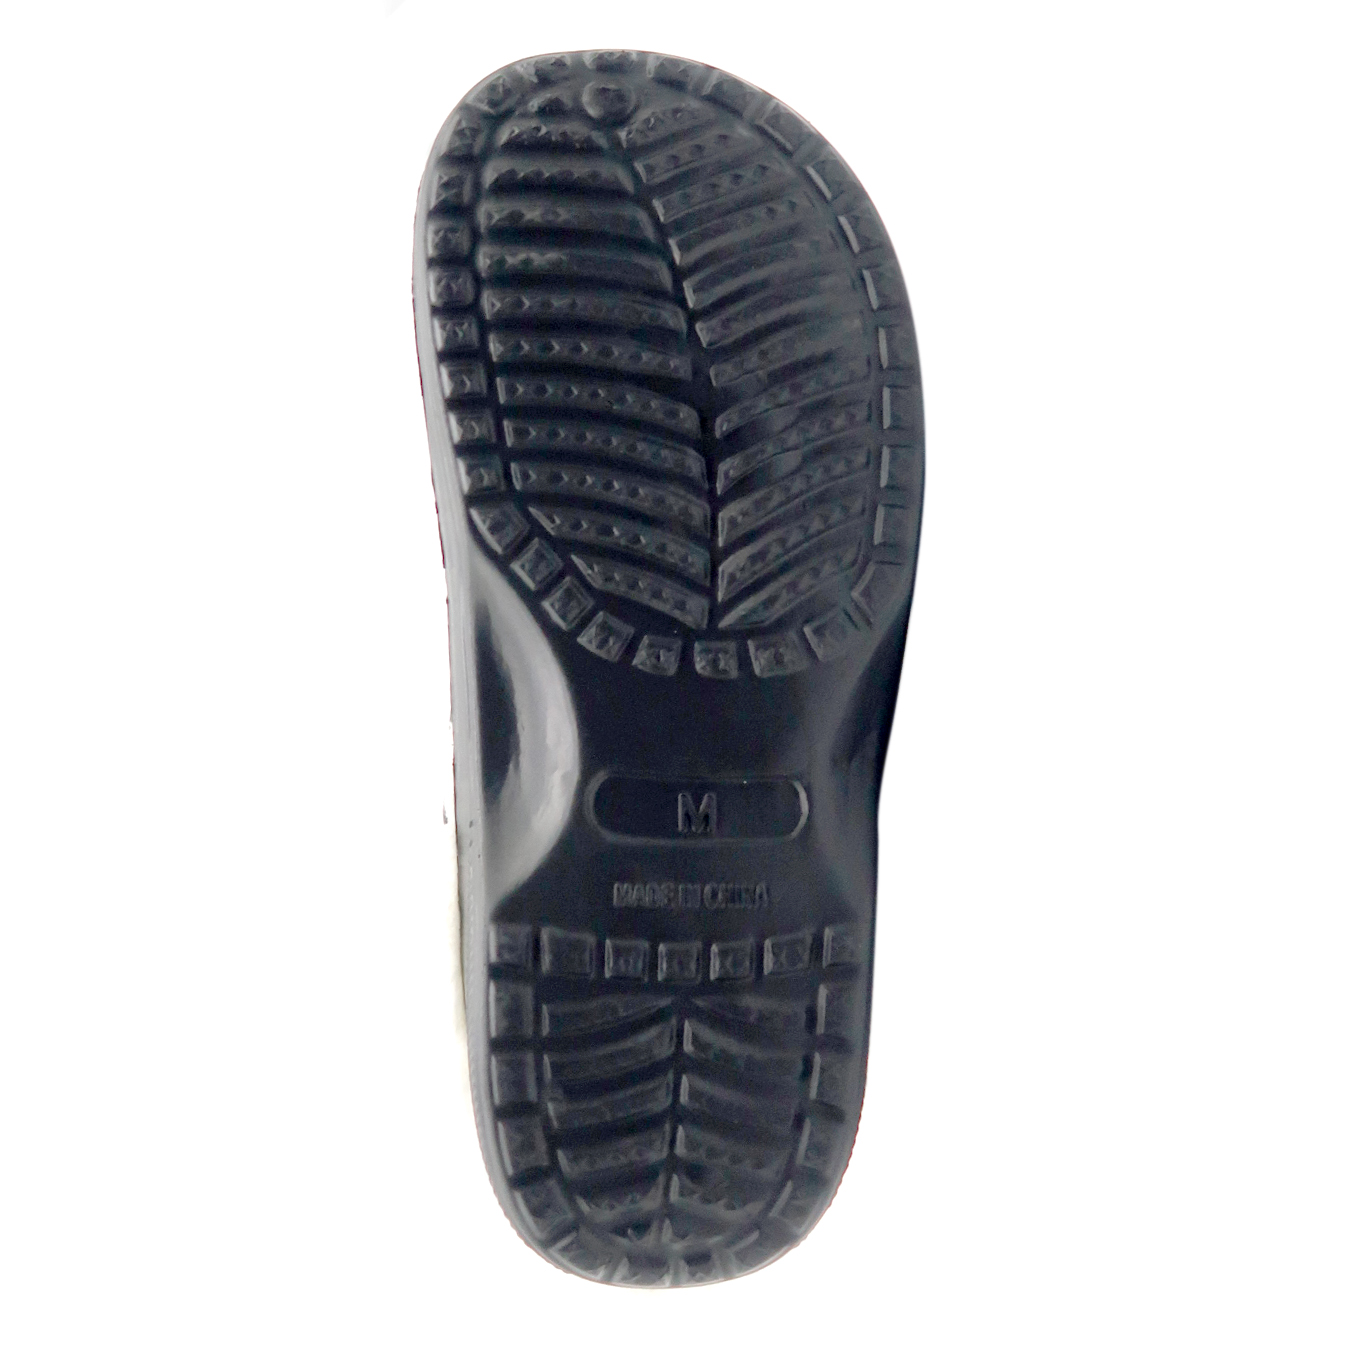  Unisex-adult Men's And Women's Classic Men's Clogs Sandals Eva Clogs Original Shoes For Men